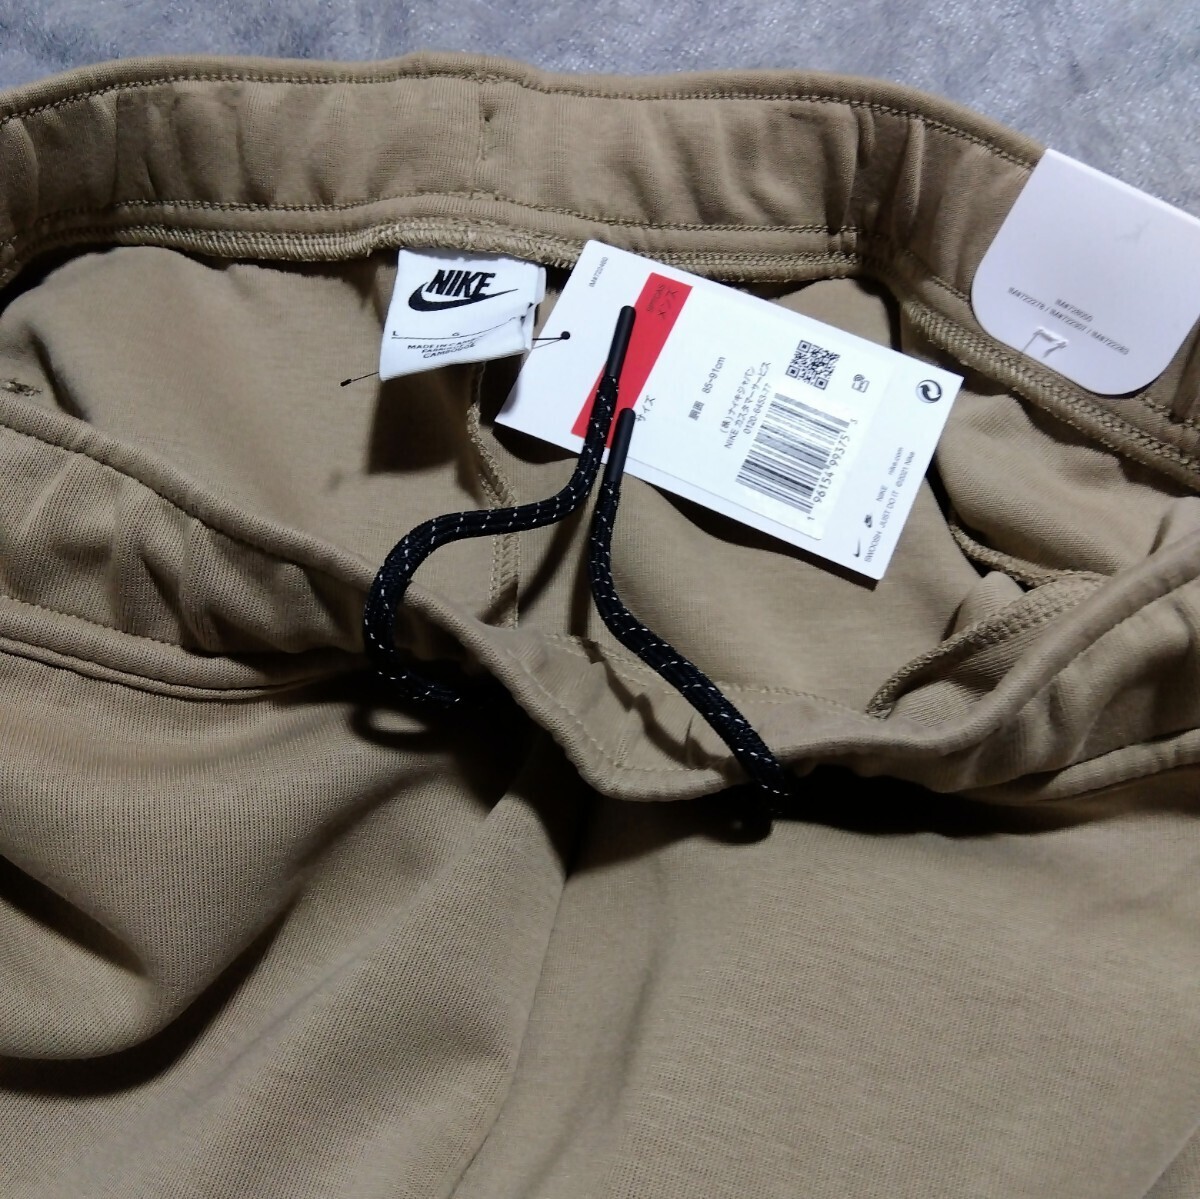 [新品] NIKE Tech Fleece Pants ナイキ テックフリースパンツ スウェットパンツ ジョガーパンツ Nikeロゴ Lサイズ